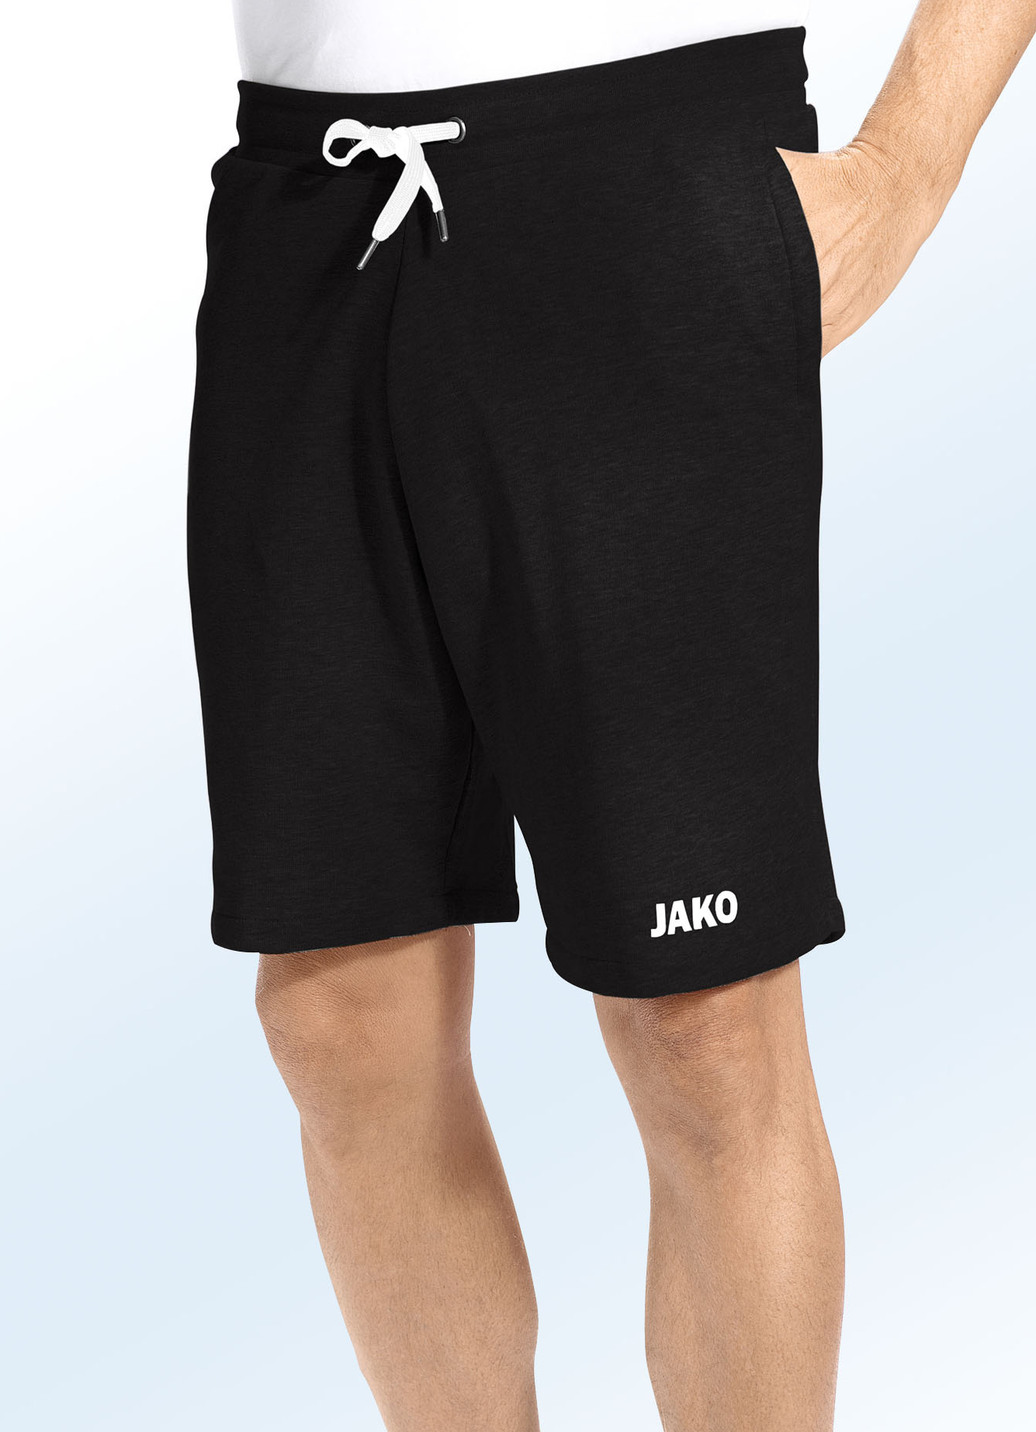 "Jako"-Shorts in 3 Farben, Schwarz, Größe XL (52/54) von Jako